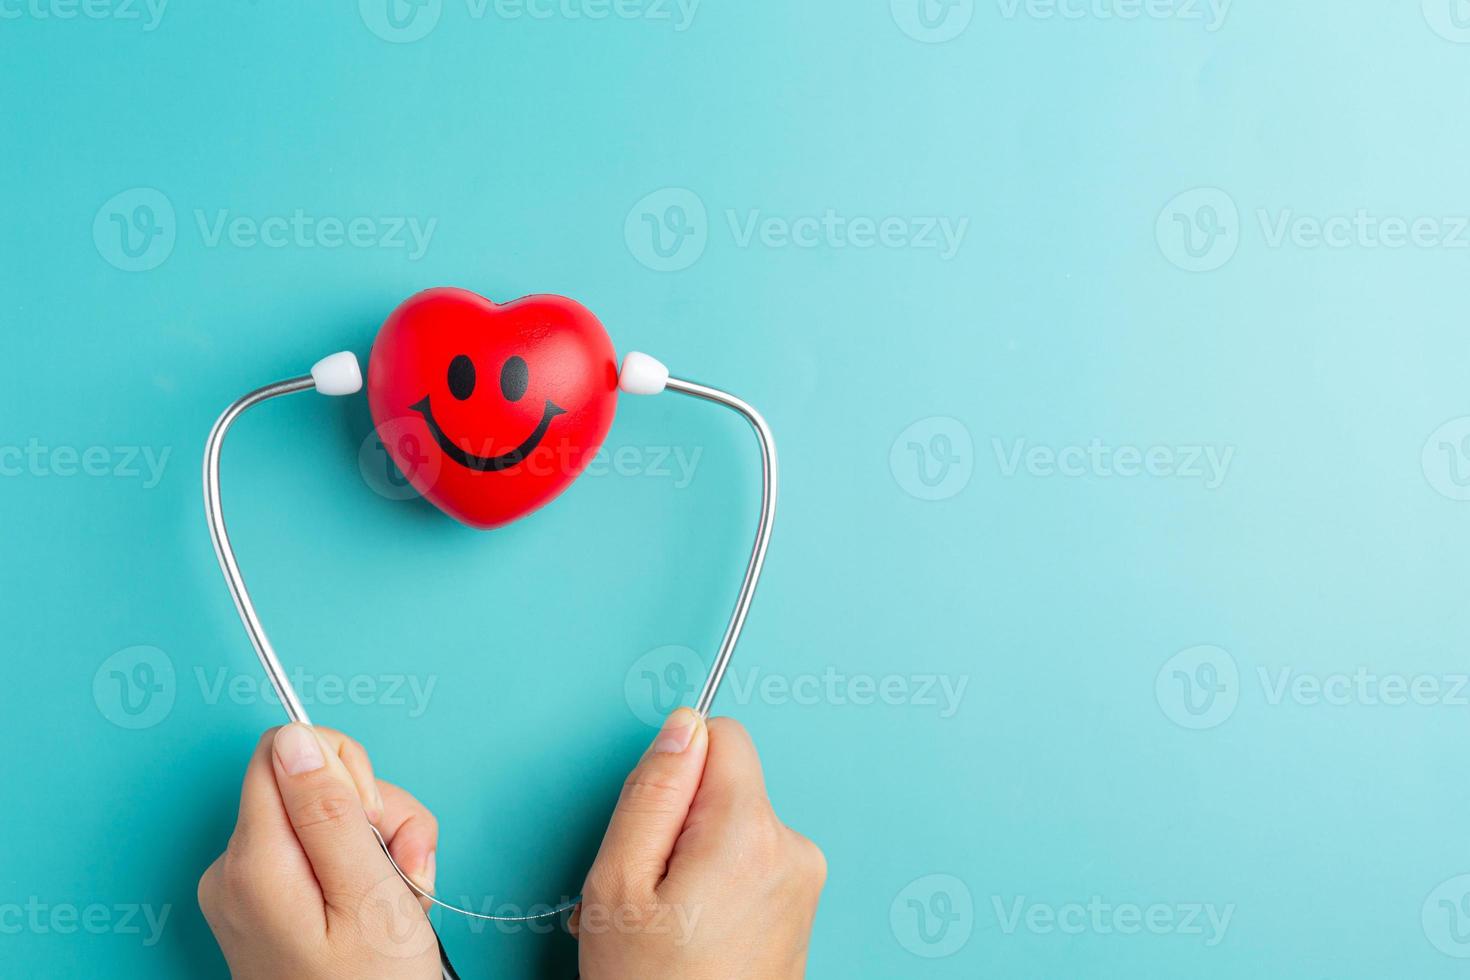 cuore rosso e stetoscopio su sfondo blu pensando farmacista day foto